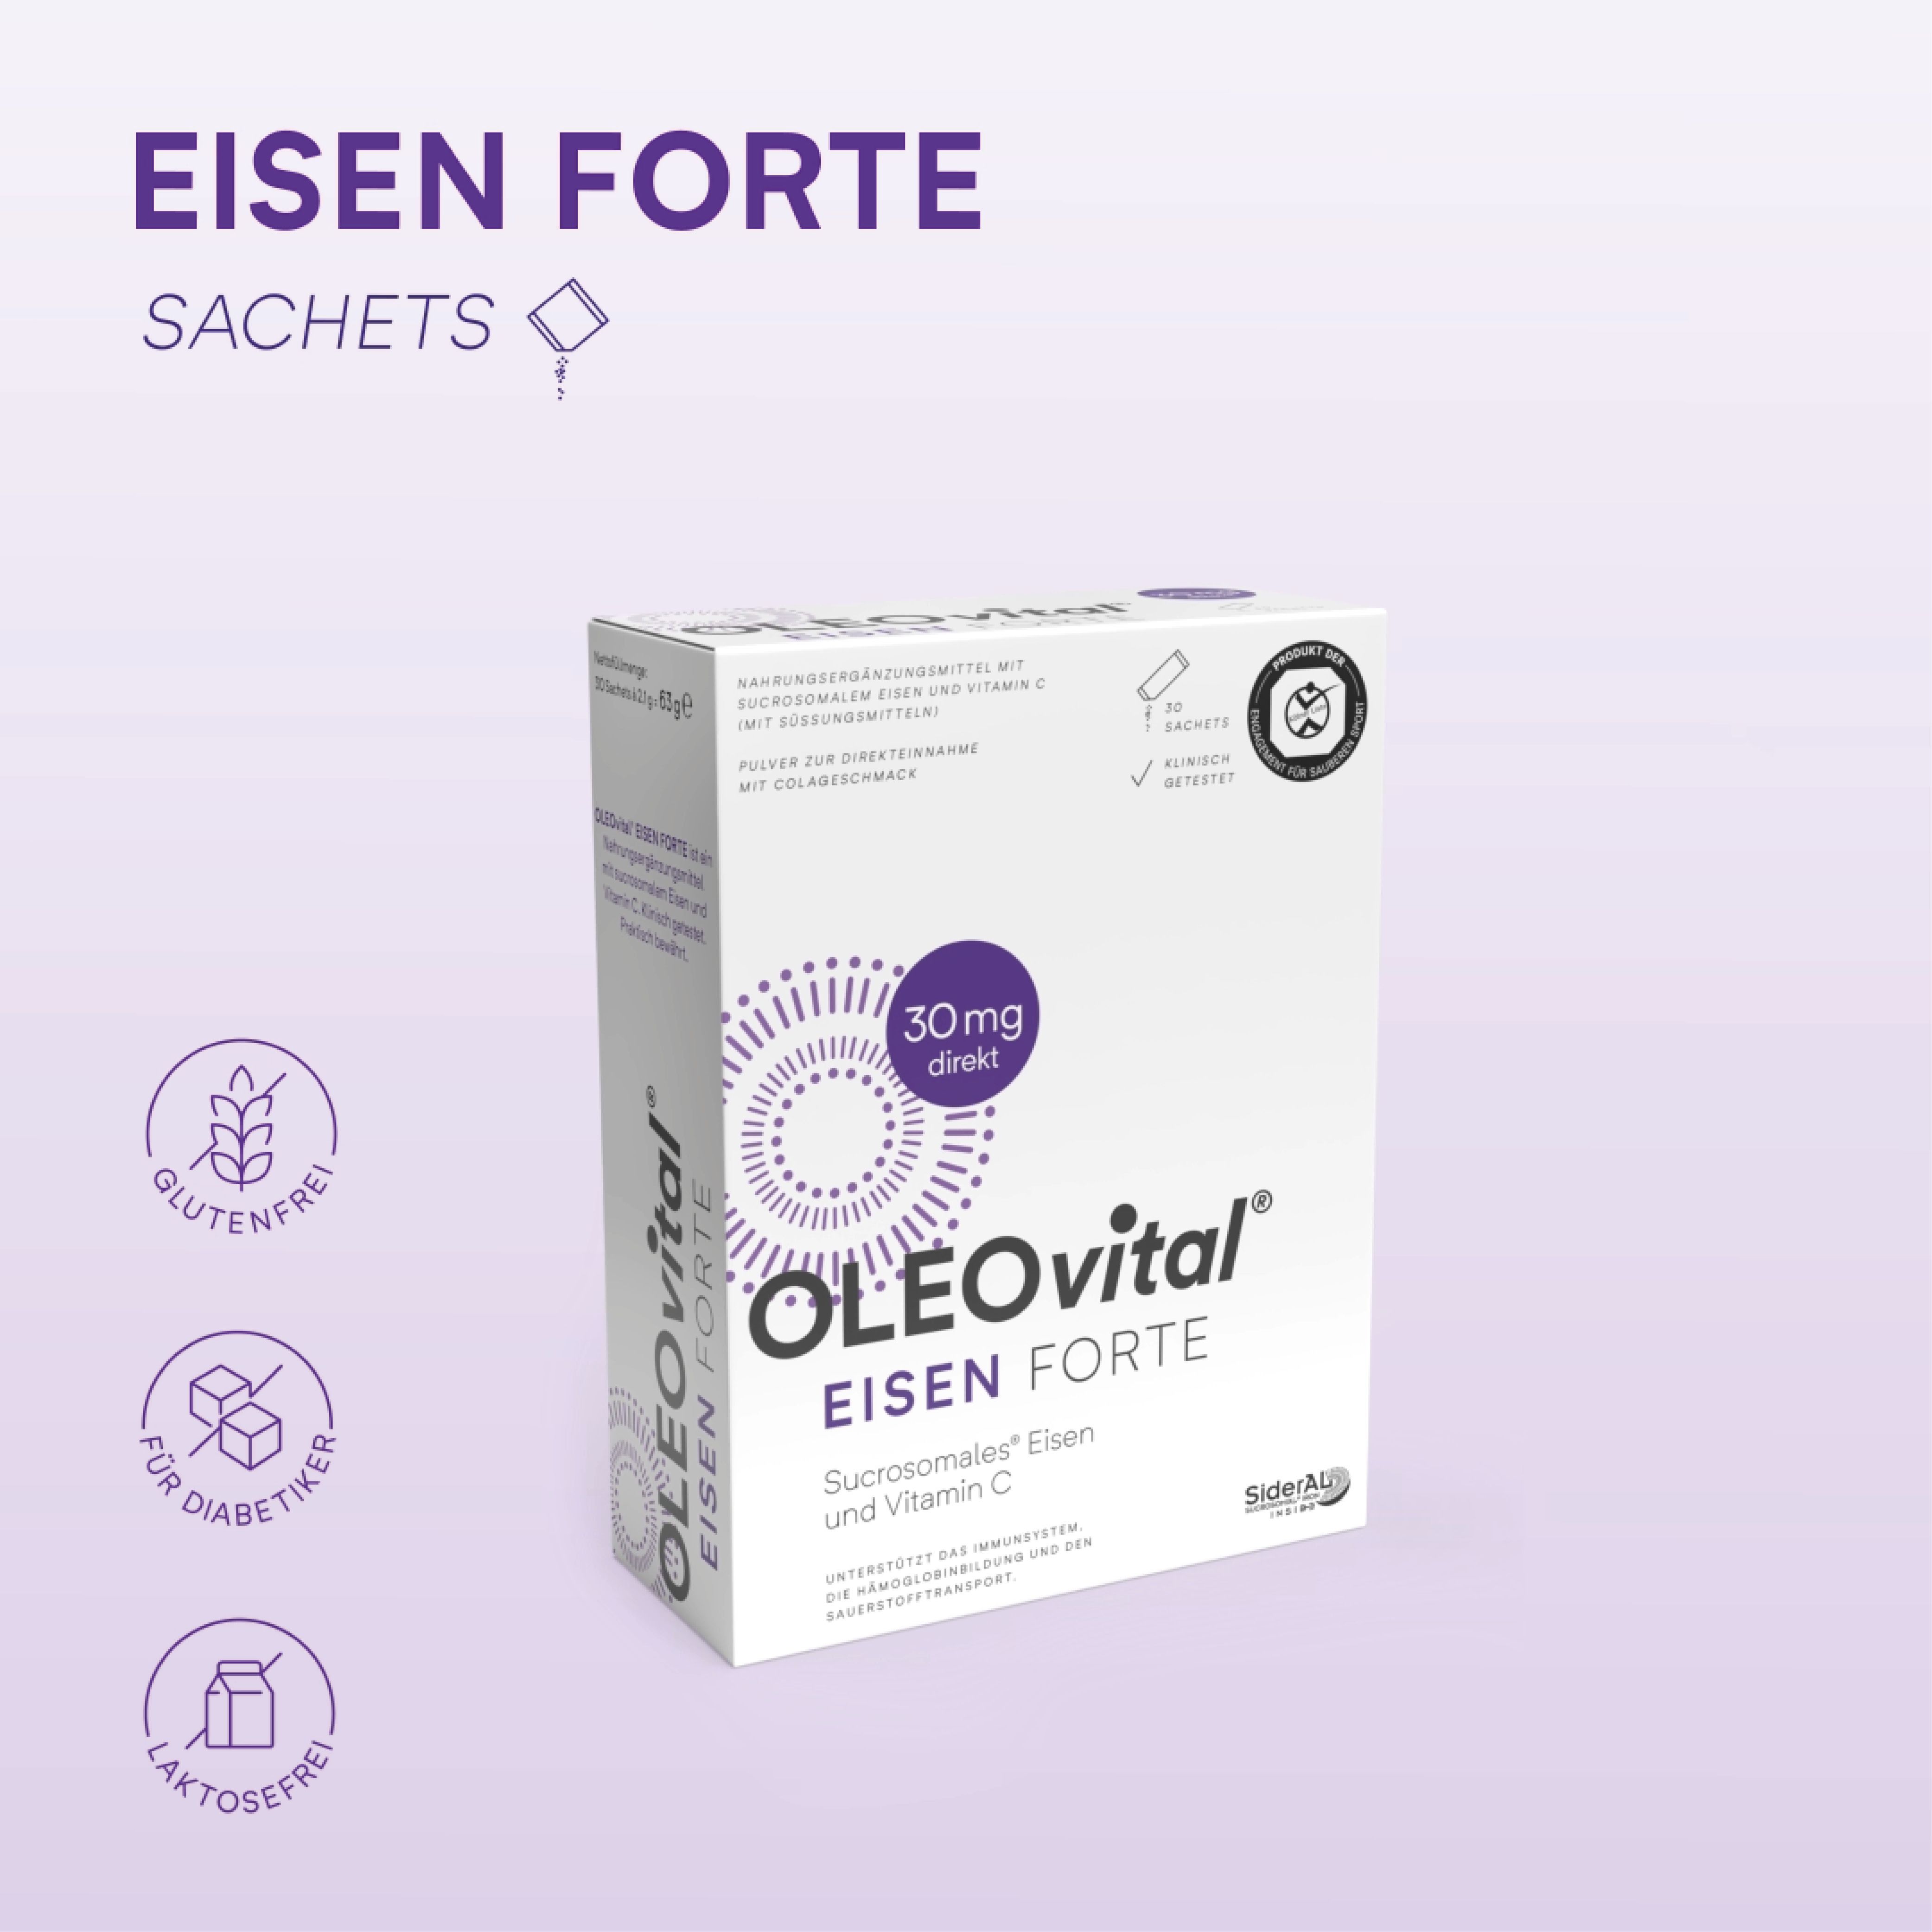 OLEOvital® Eisen Forte